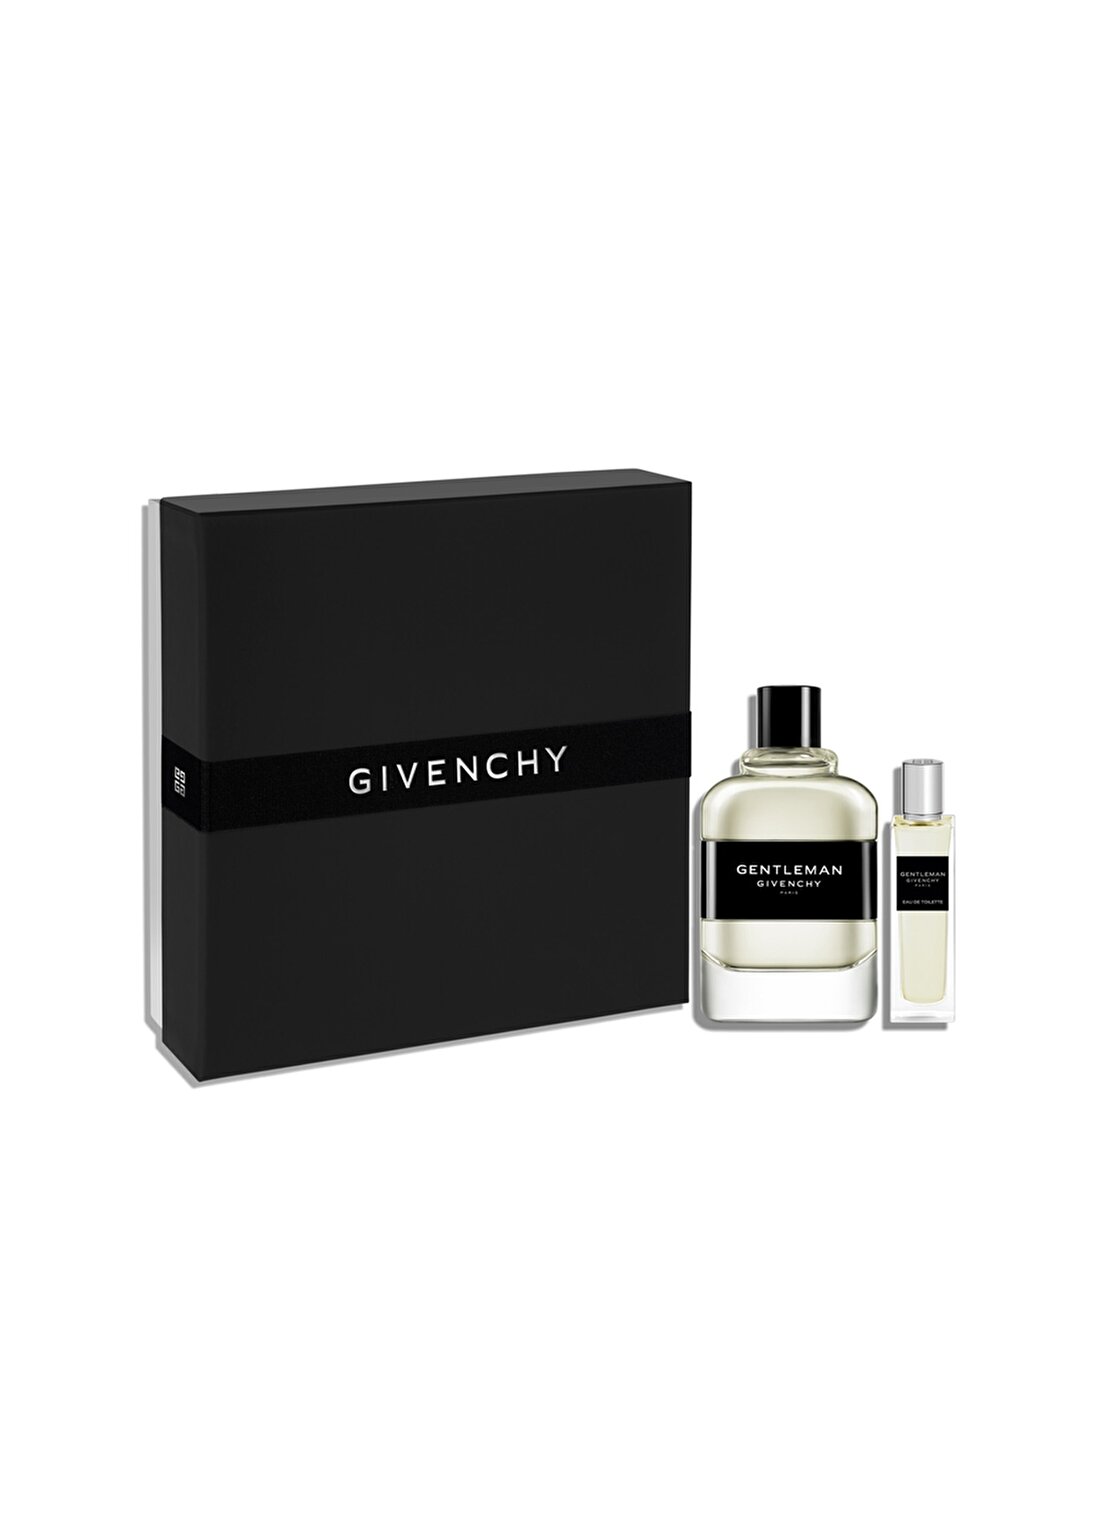 Givenchy Gentleman Edt 100 Ml+ Travel Spray 15 Ml Parfüm Set